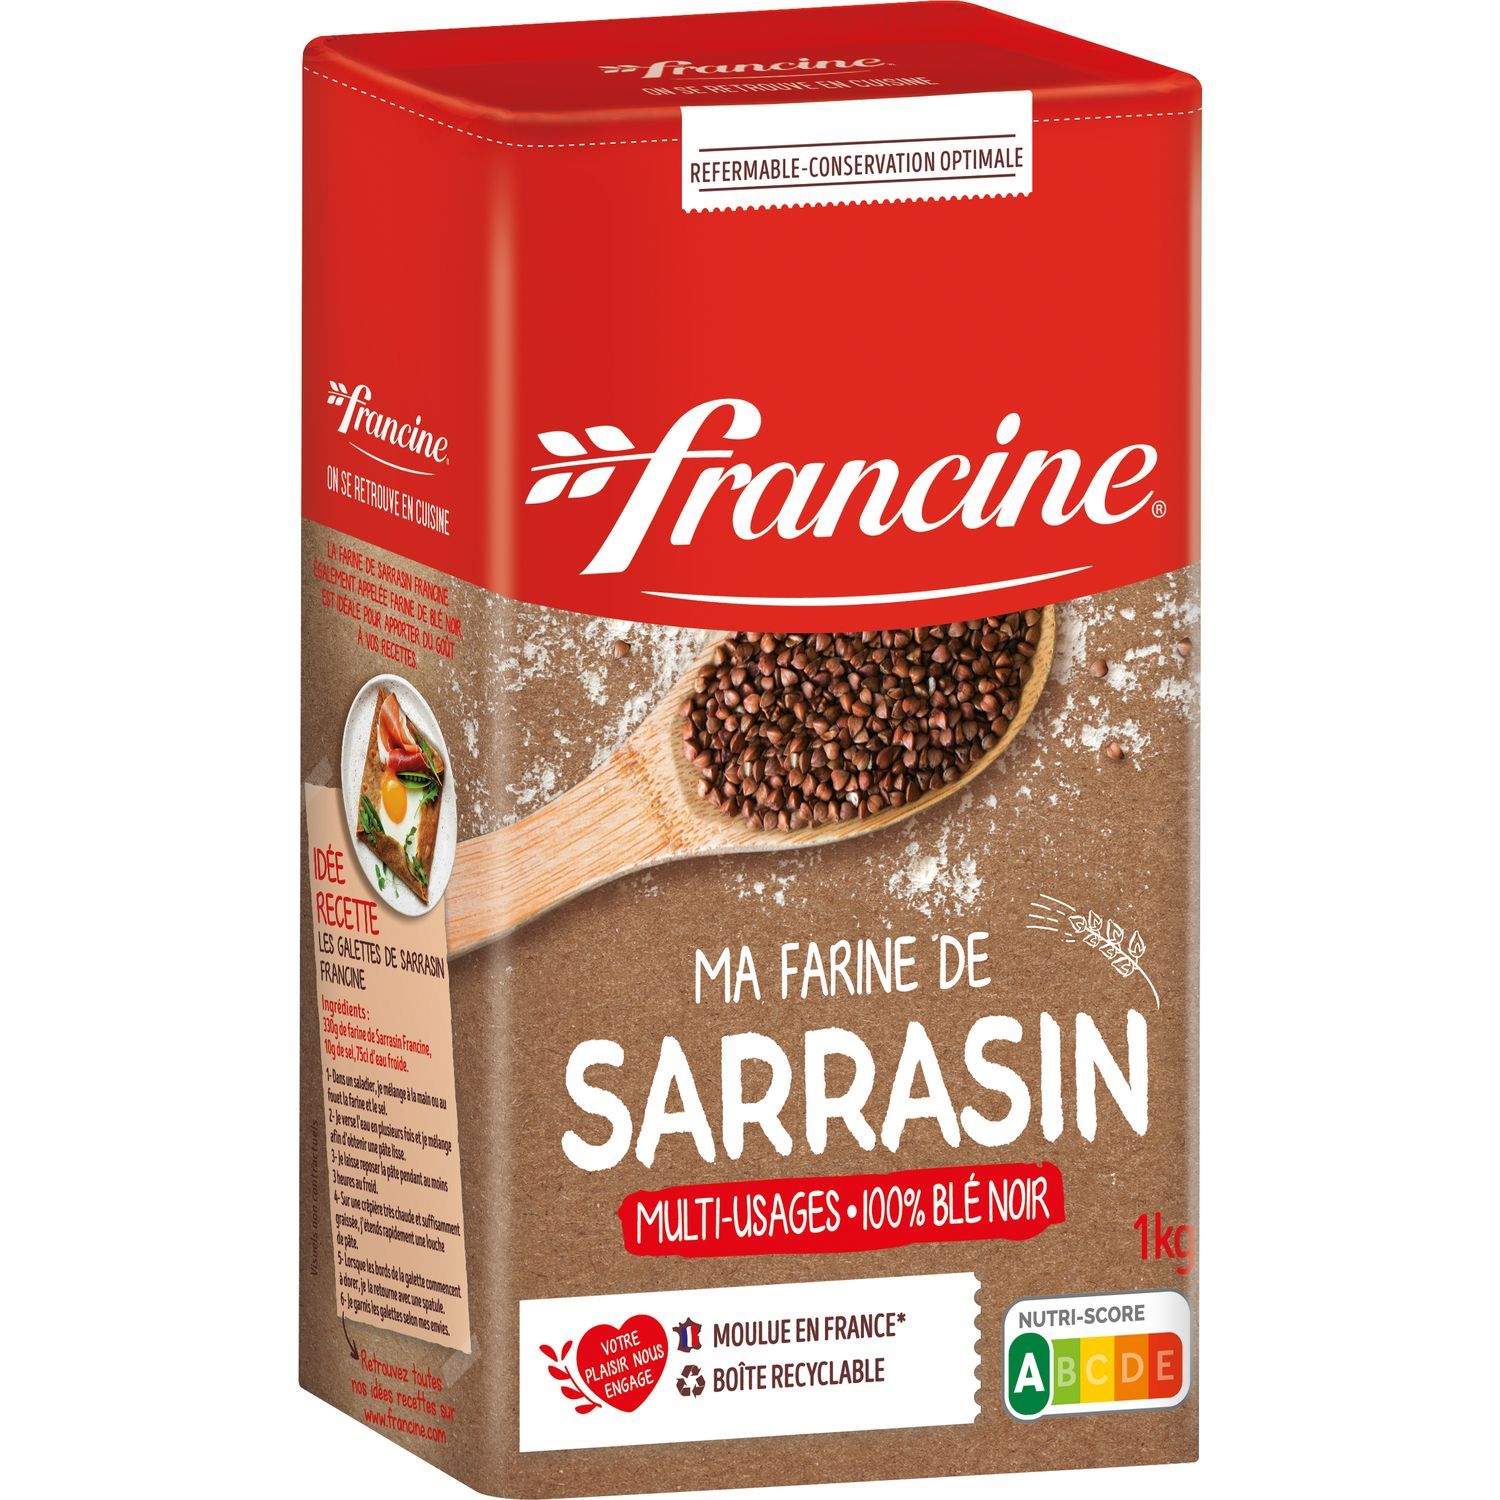 FRANCINE Farine de sarrasin 100% blé noir multi-usages 1kg pas